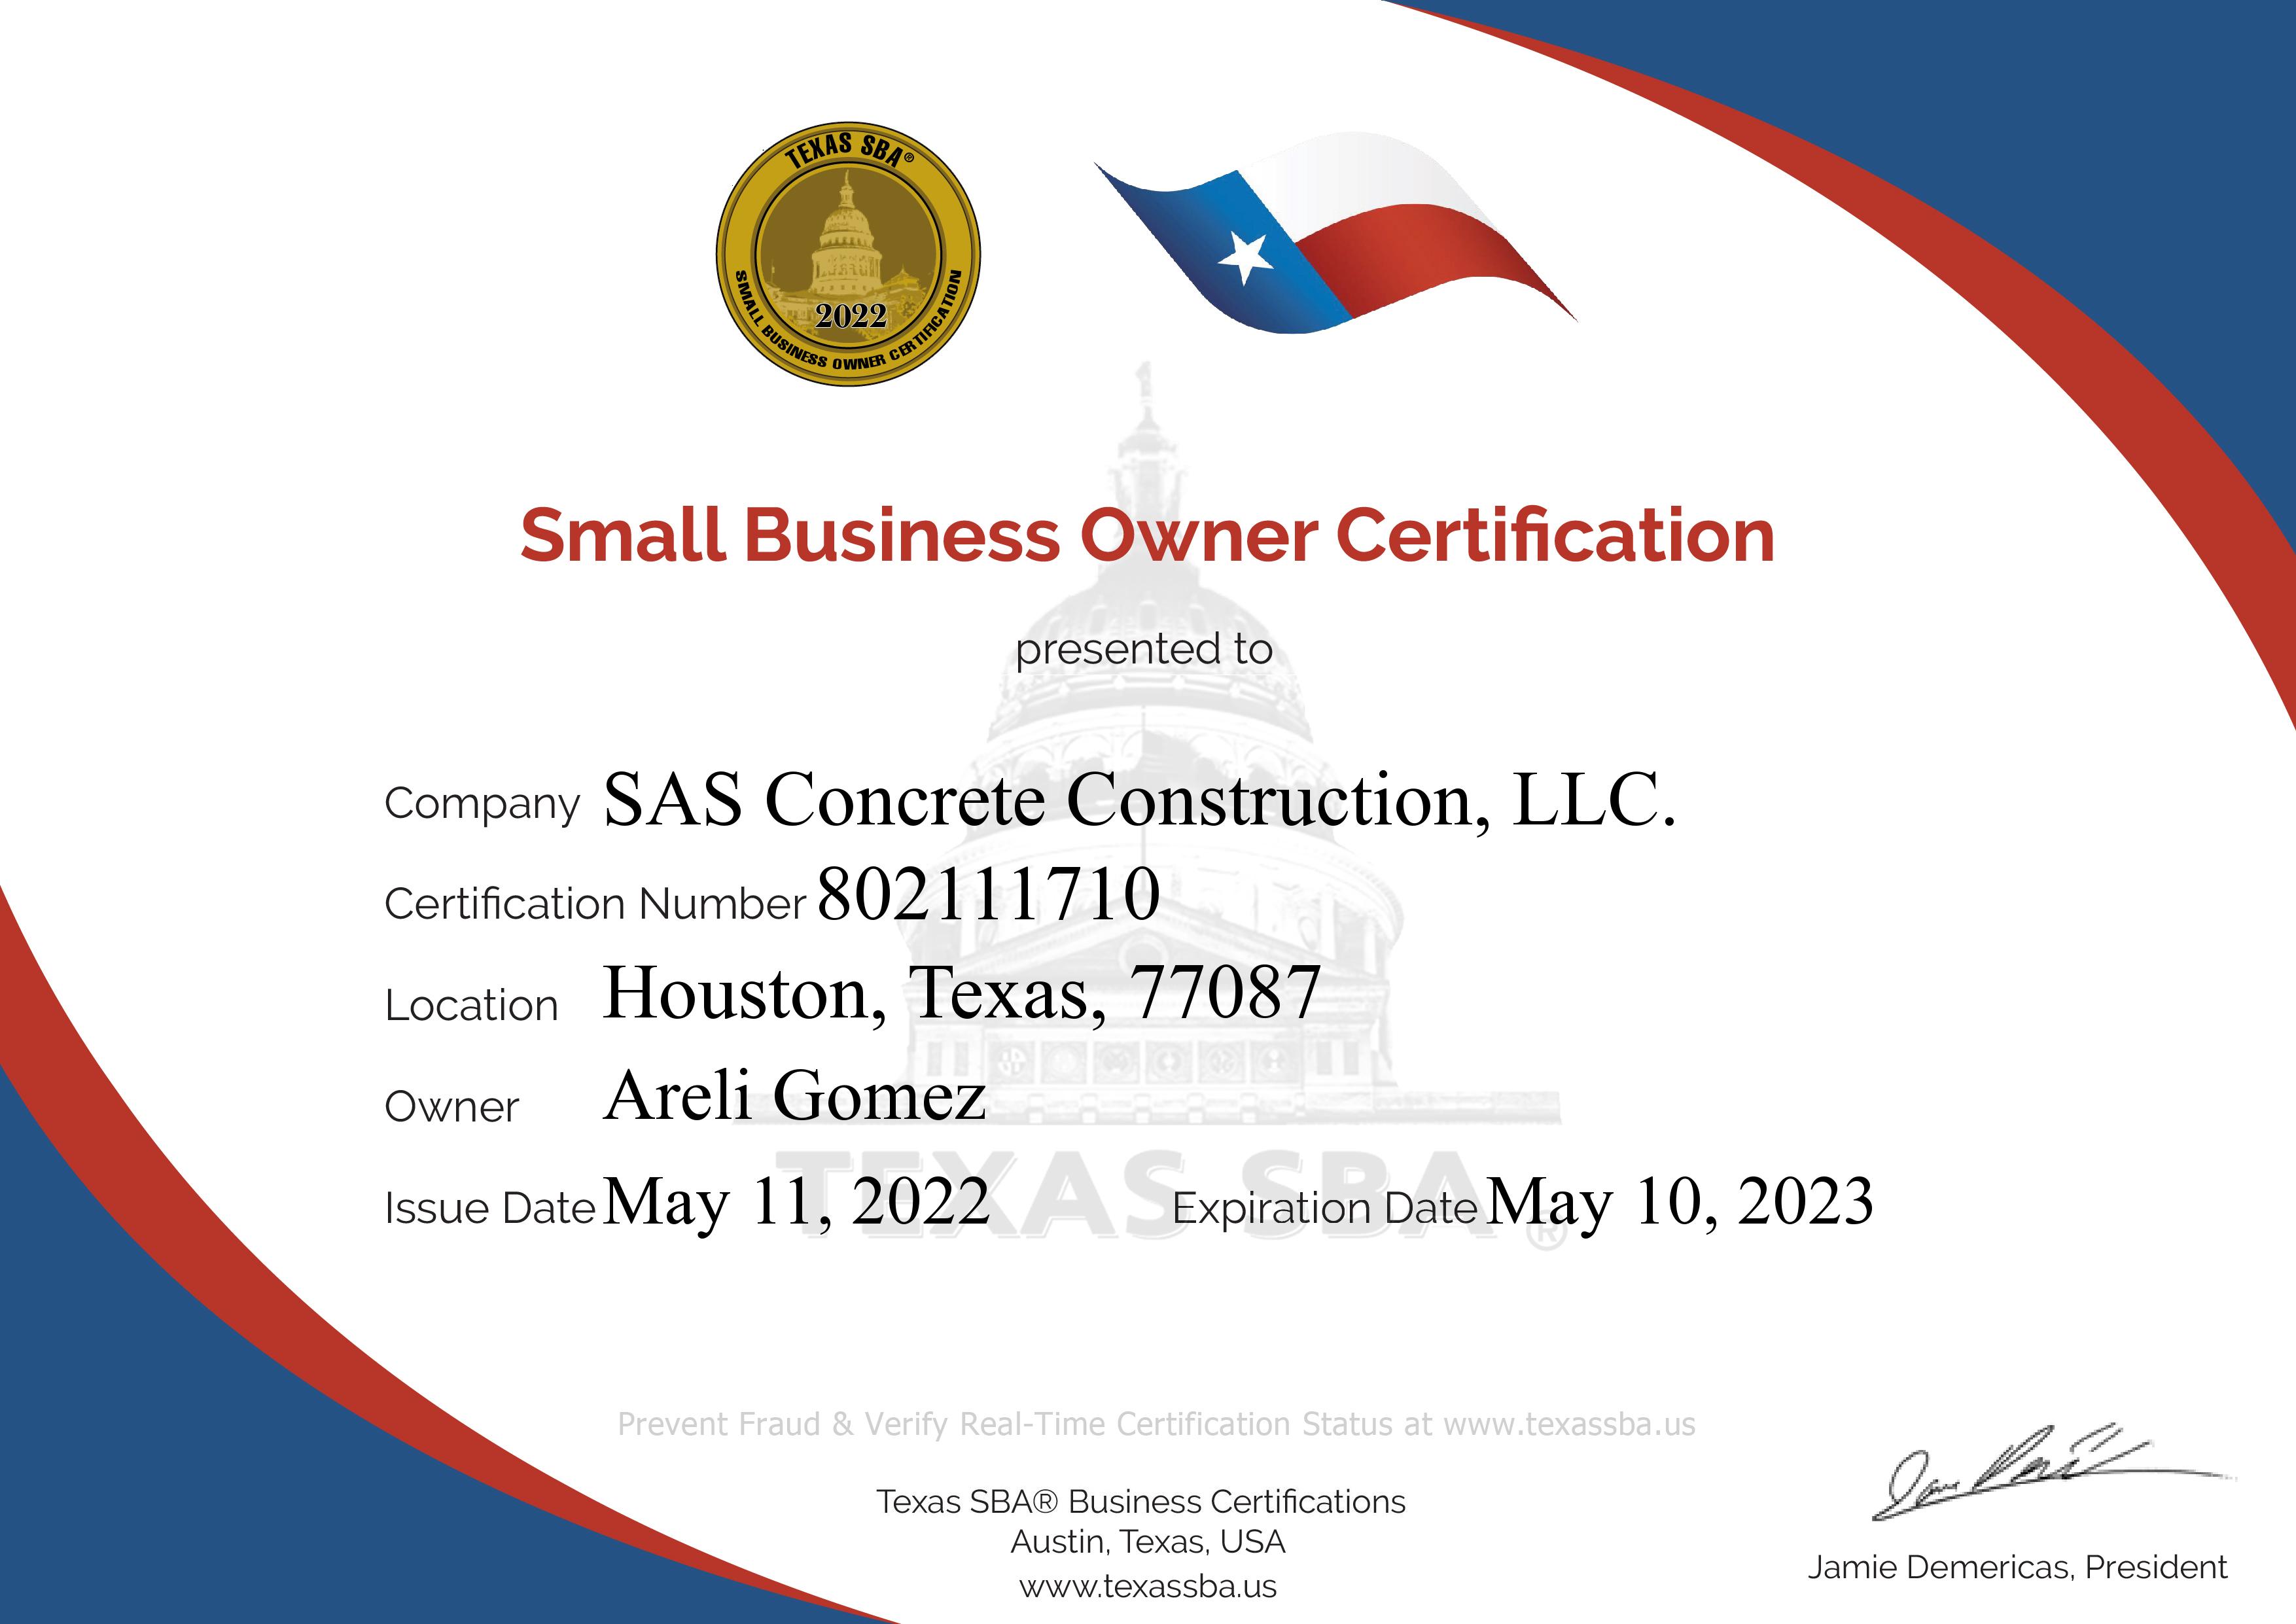 SAS Concrete Construction, LLC.